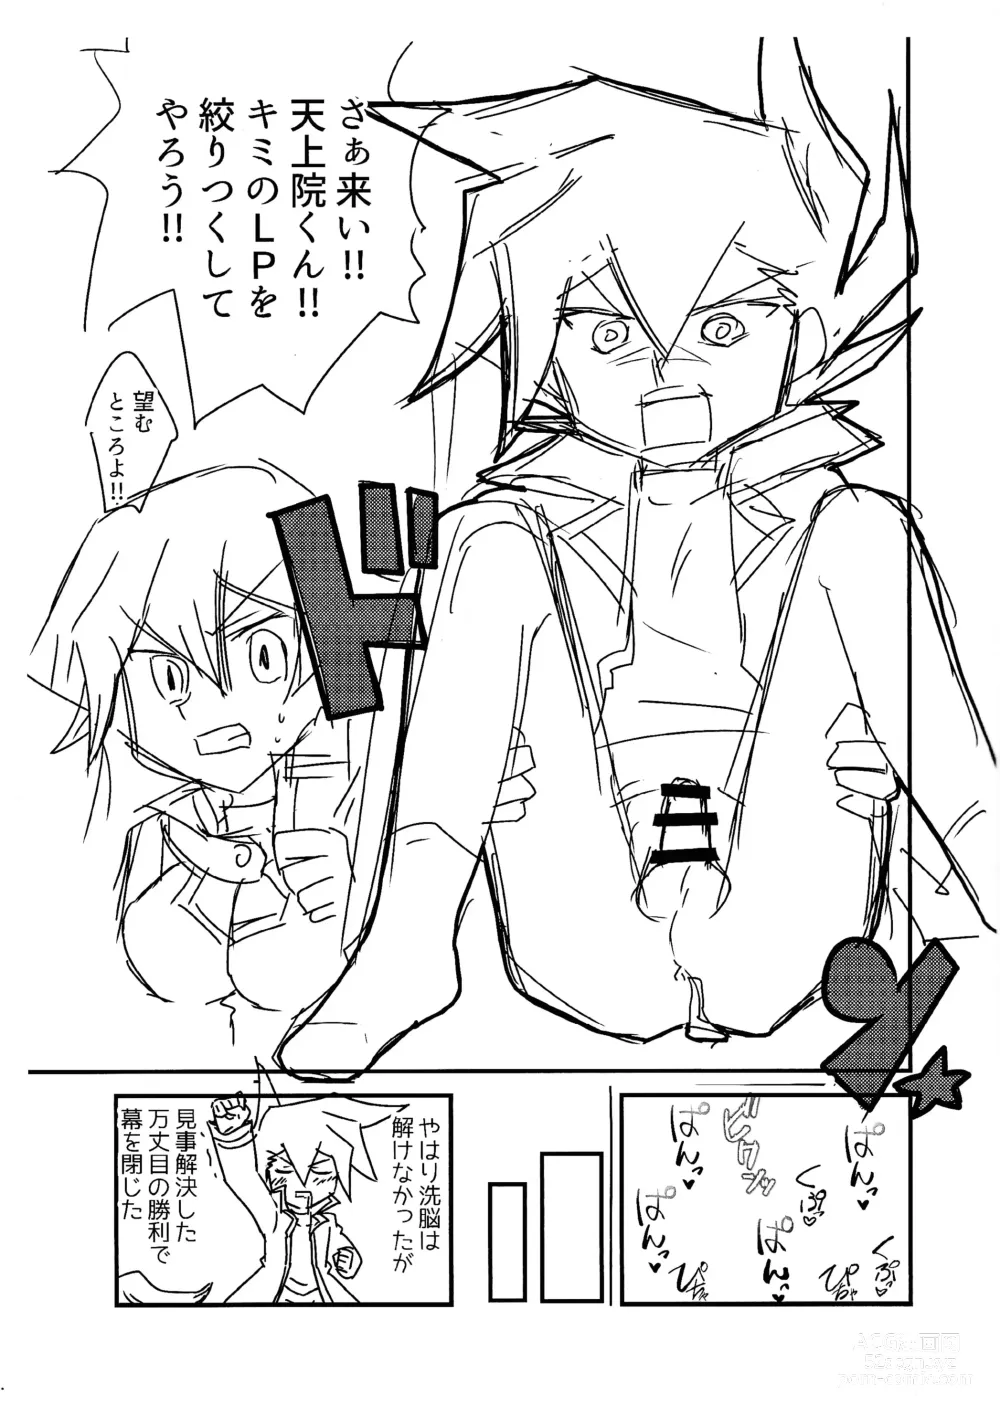 Page 8 of doujinshi Kuro no ore ga mata shiroku some rareyou to shite iru yodaga!?